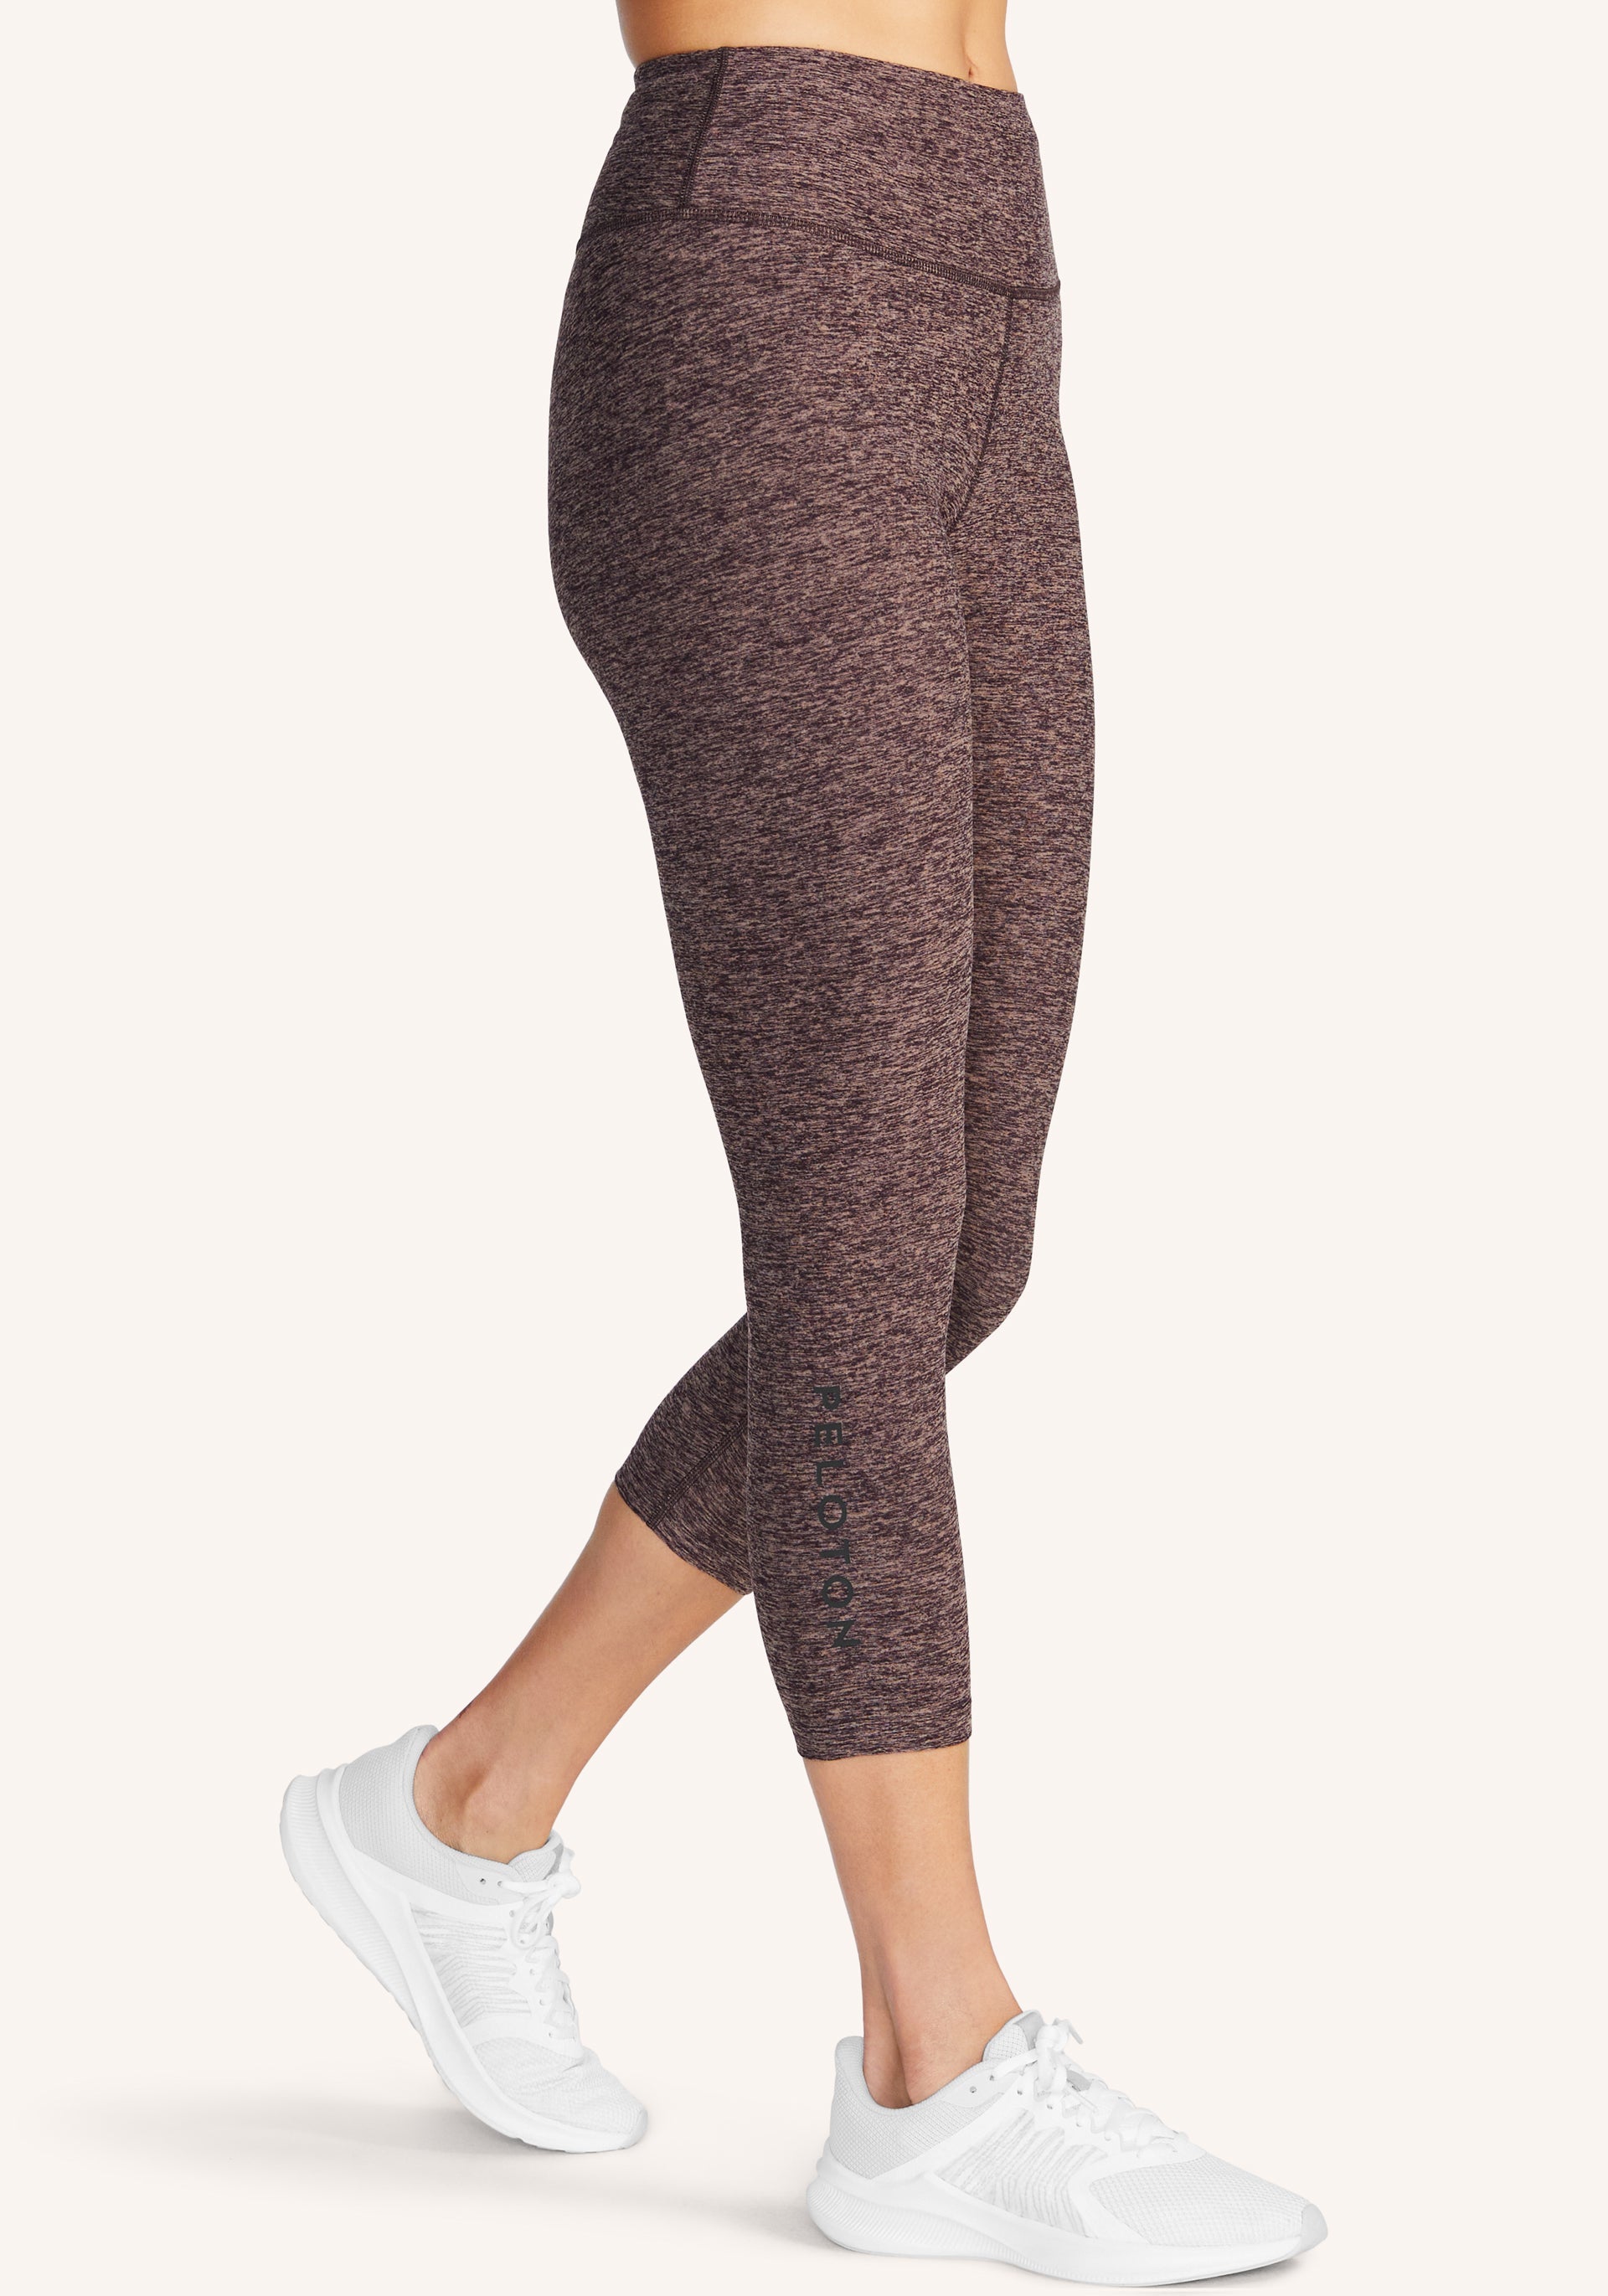 Beyond Yoga X Peloton Space Dye Leggings/Crop Top Set Small - Athletic  apparel